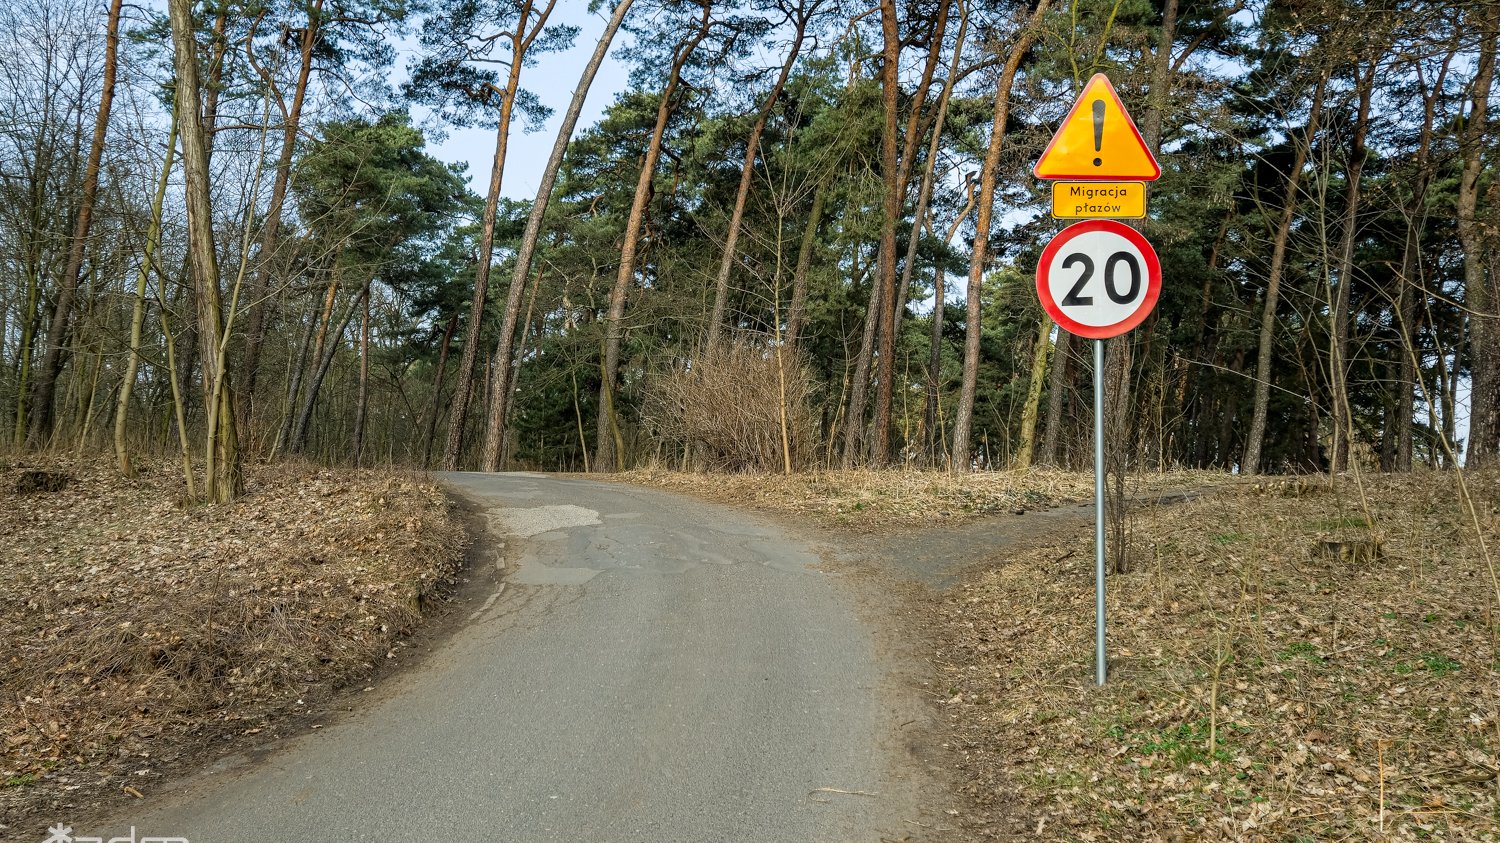 Zdjęcie przedstawia znak drogowy oraz polną drogę.